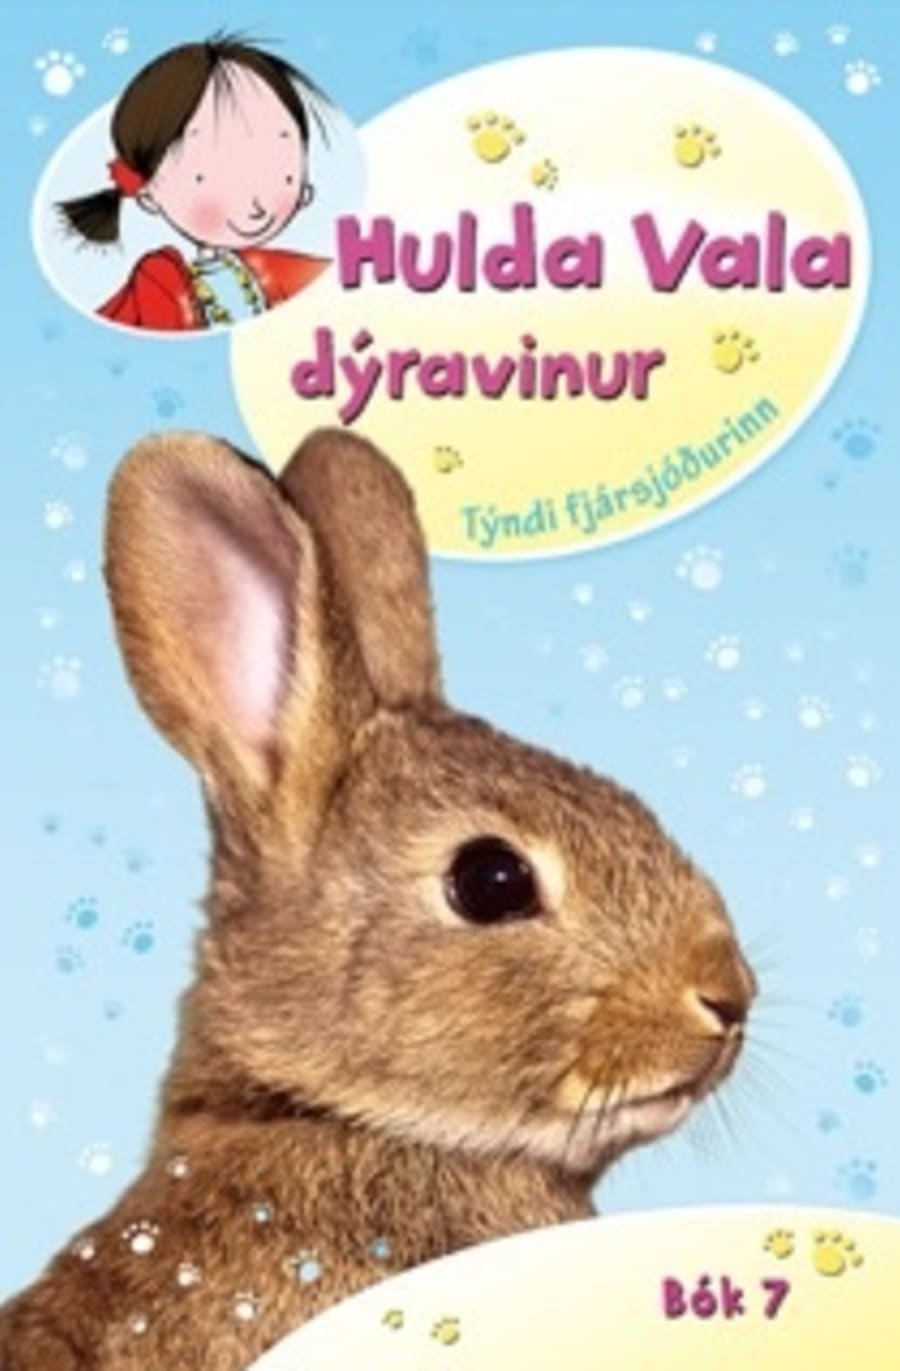 Hulda Vala - Týndi fjársjóðuri